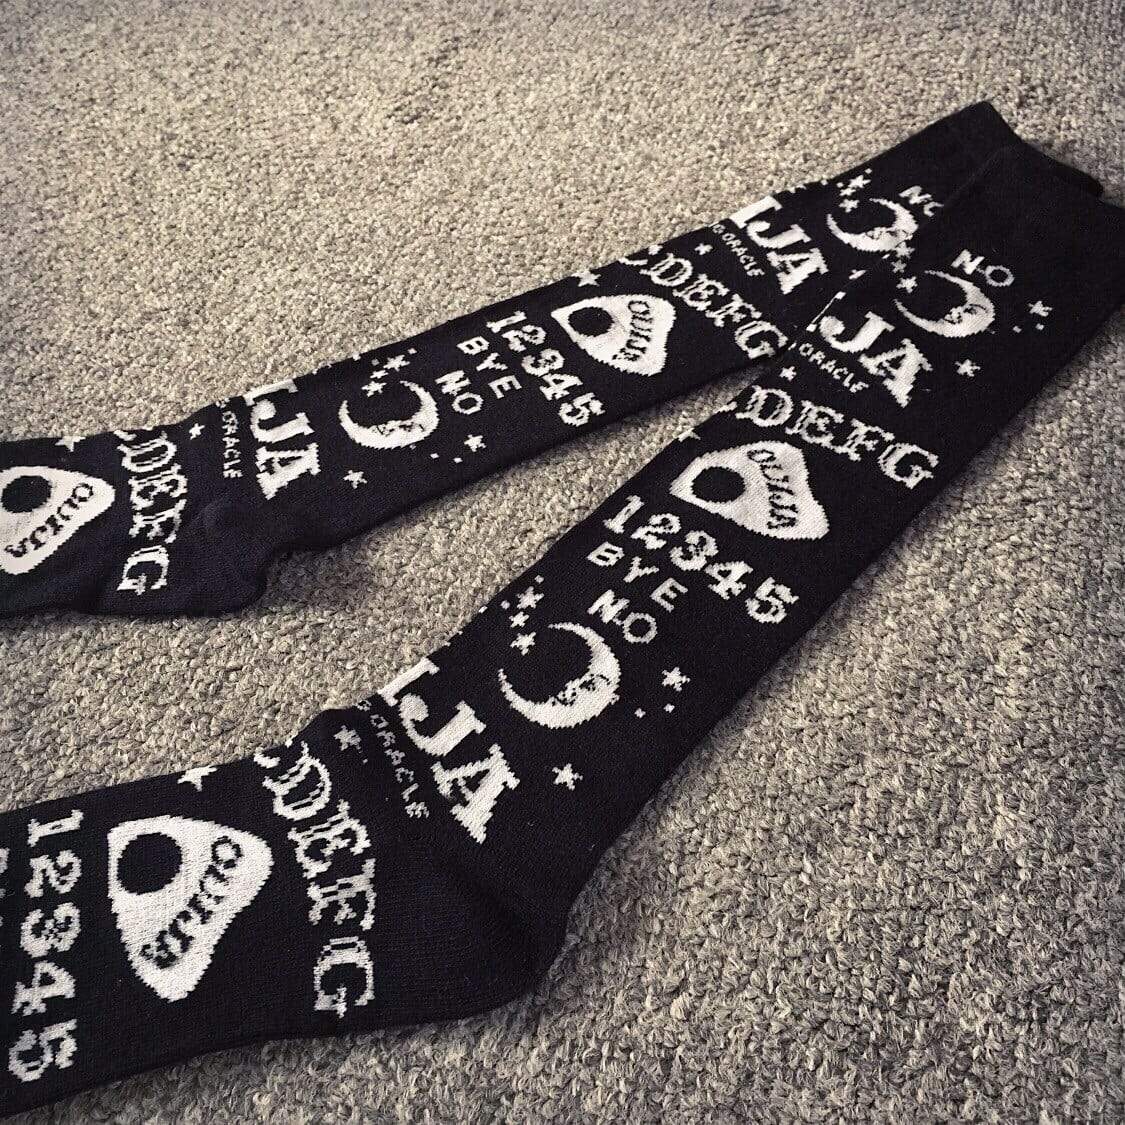 Ouija Board Socks